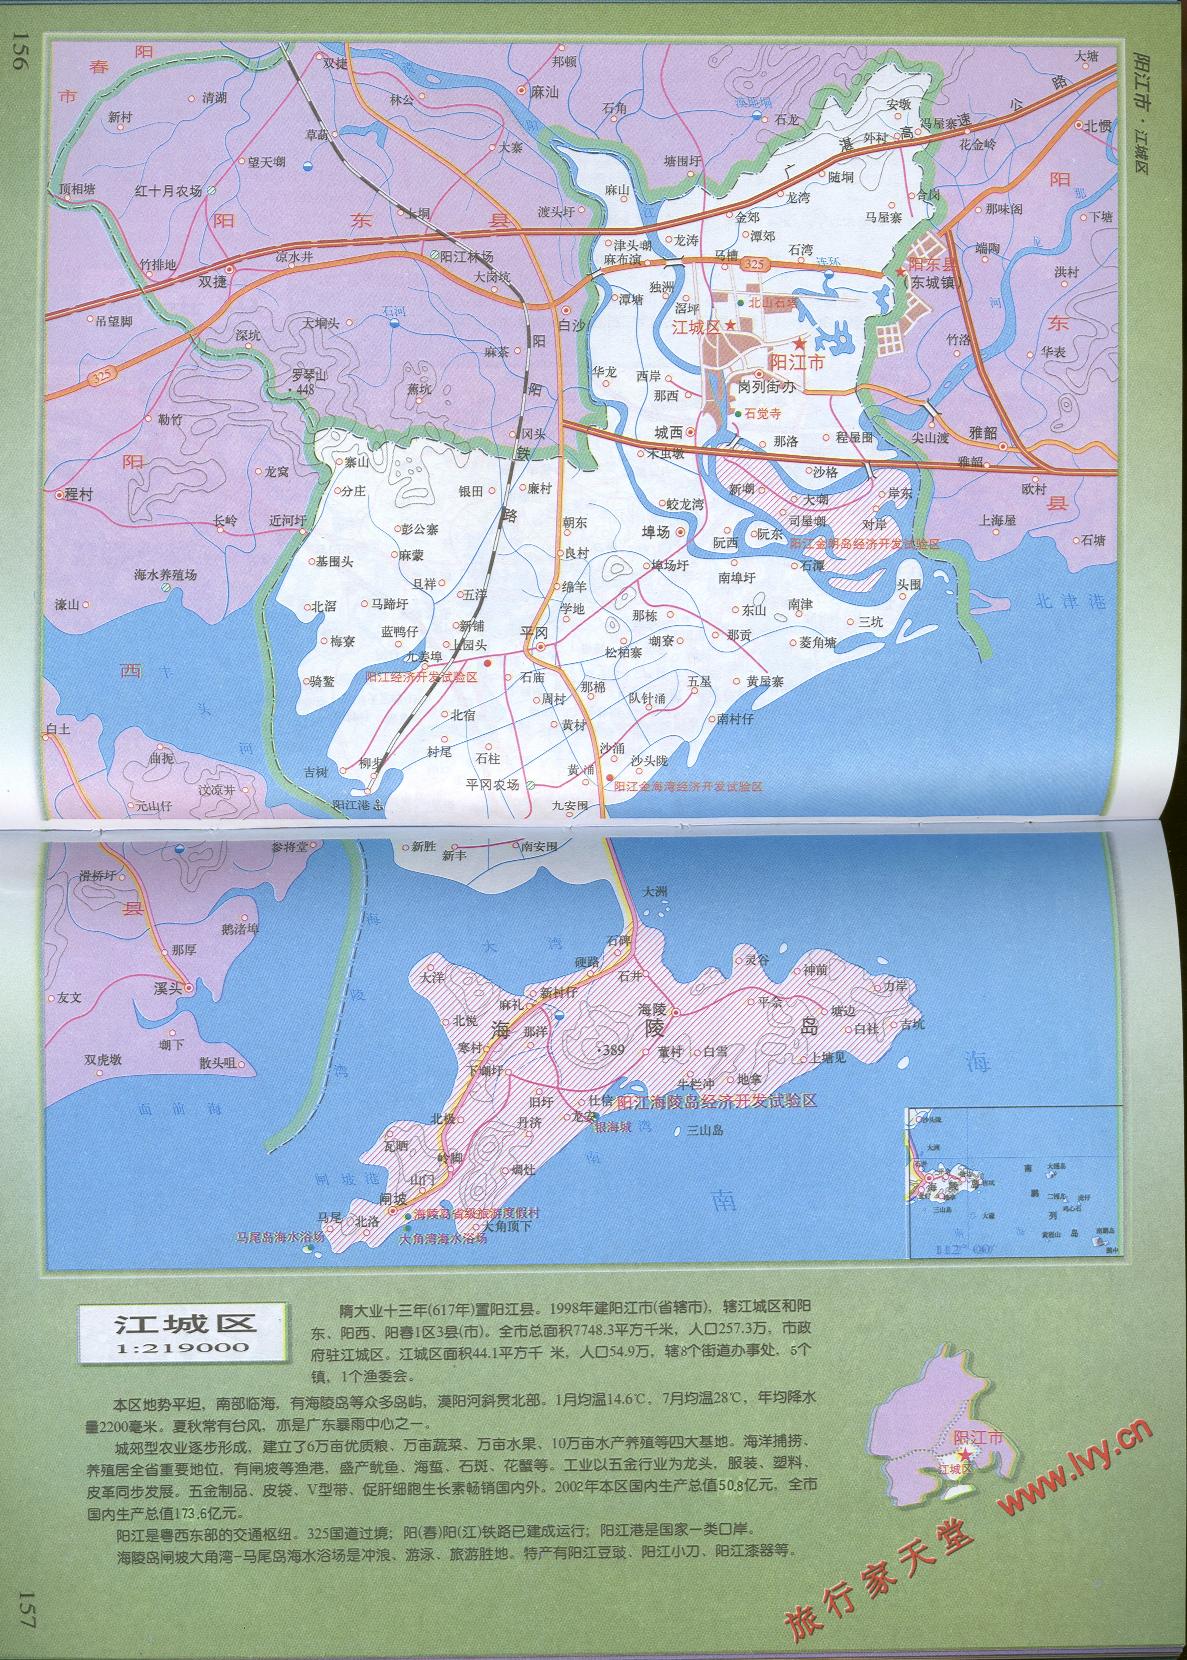 阳江市地图_阳江市地图全图 - 随意贴 图片